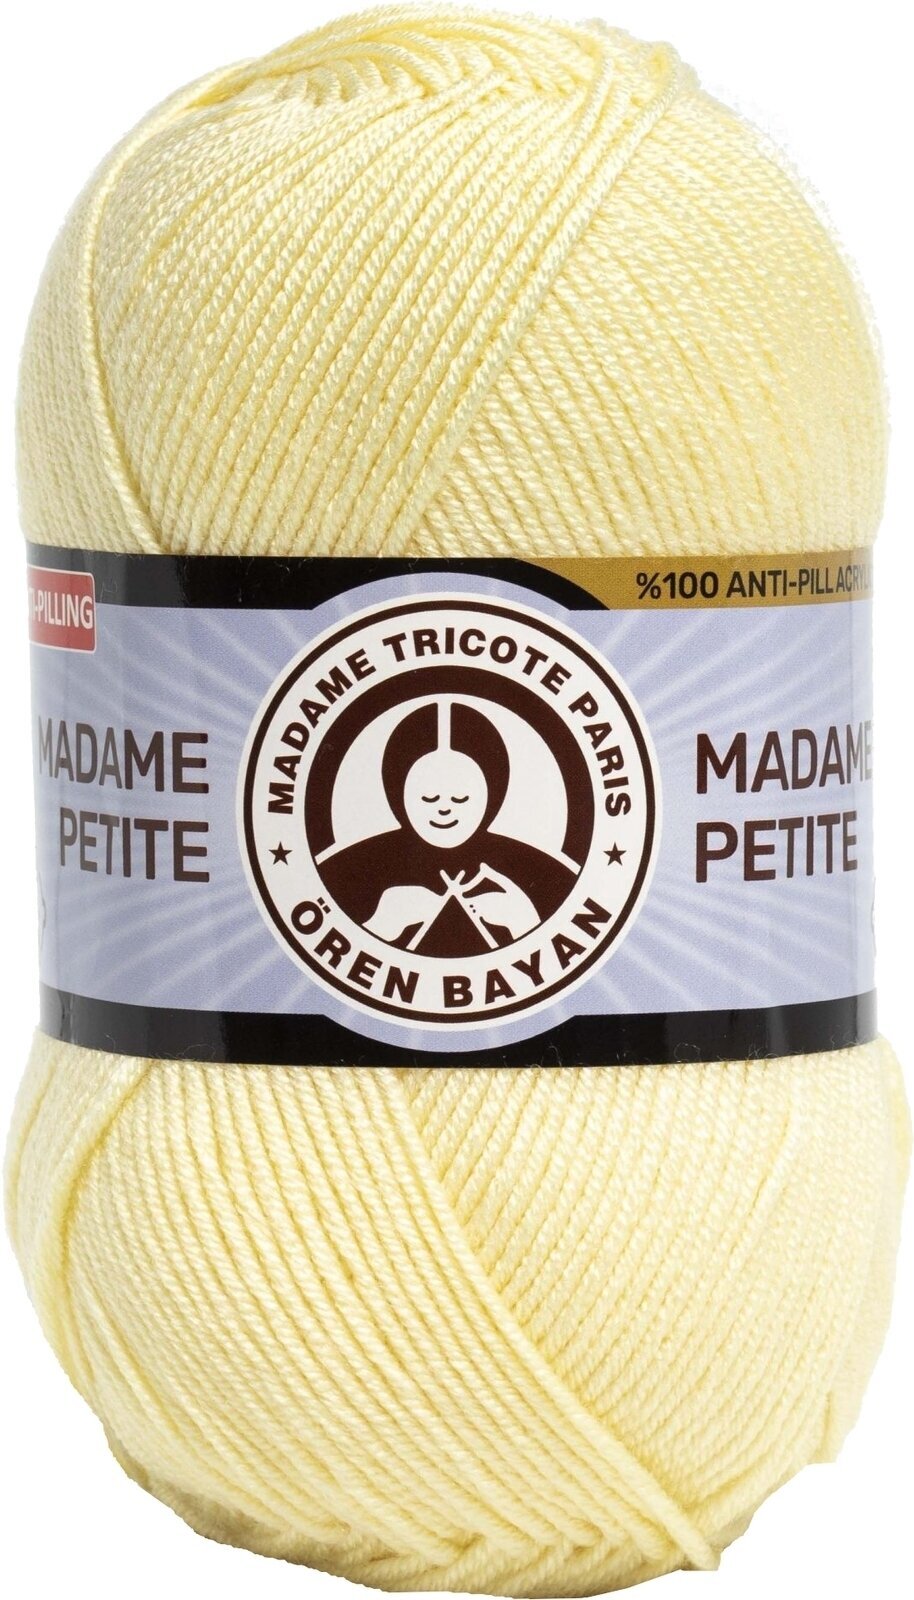 Νήμα Πλεξίματος Madame Tricote Paris Madame Petite 3848 98 Νήμα Πλεξίματος